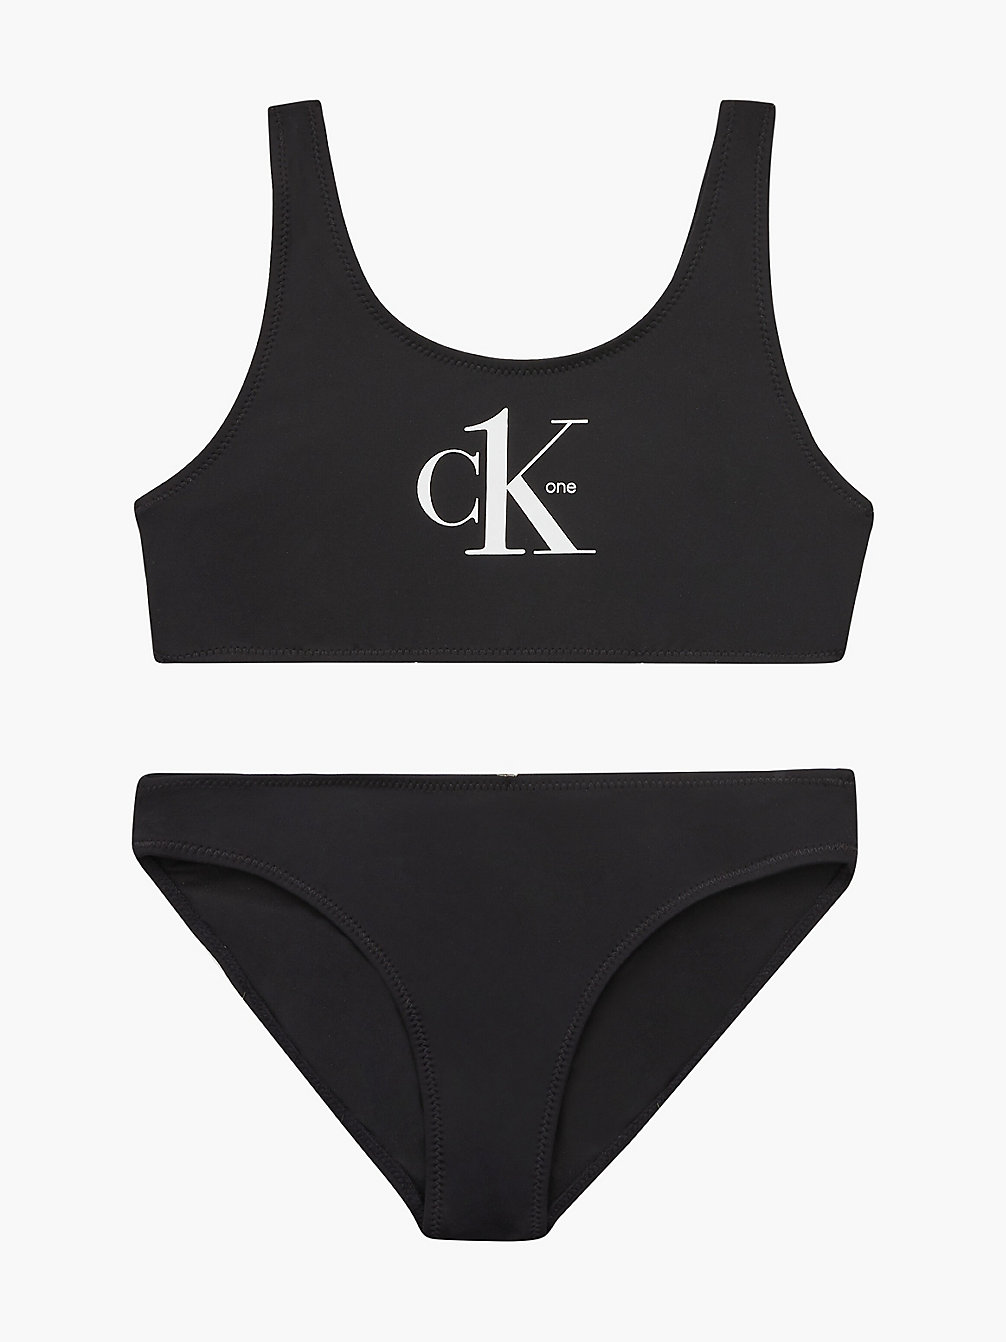 PVH BLACK Bikini-Set Mit Bralette Für Mädchen - CK One undefined Maedchen Calvin Klein